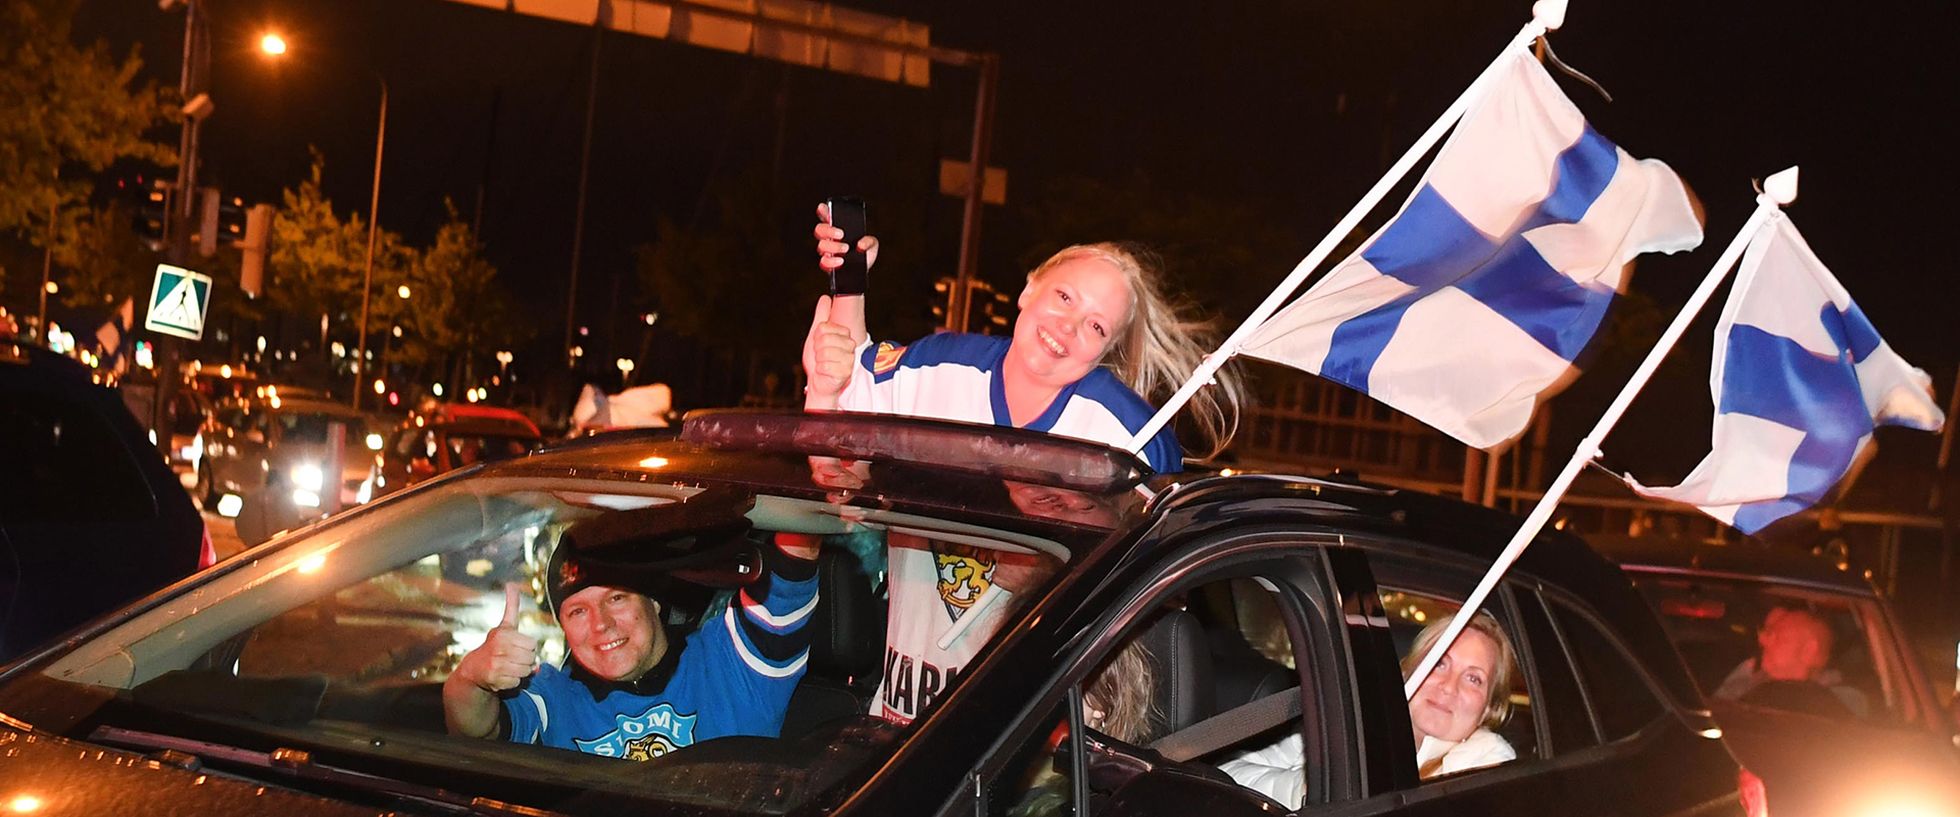 Soome võit jäähoki maailmameistrivõistlustel läks inimestele rohkem korda kui Europarlamendi valimistel osalemine ja tulemused.